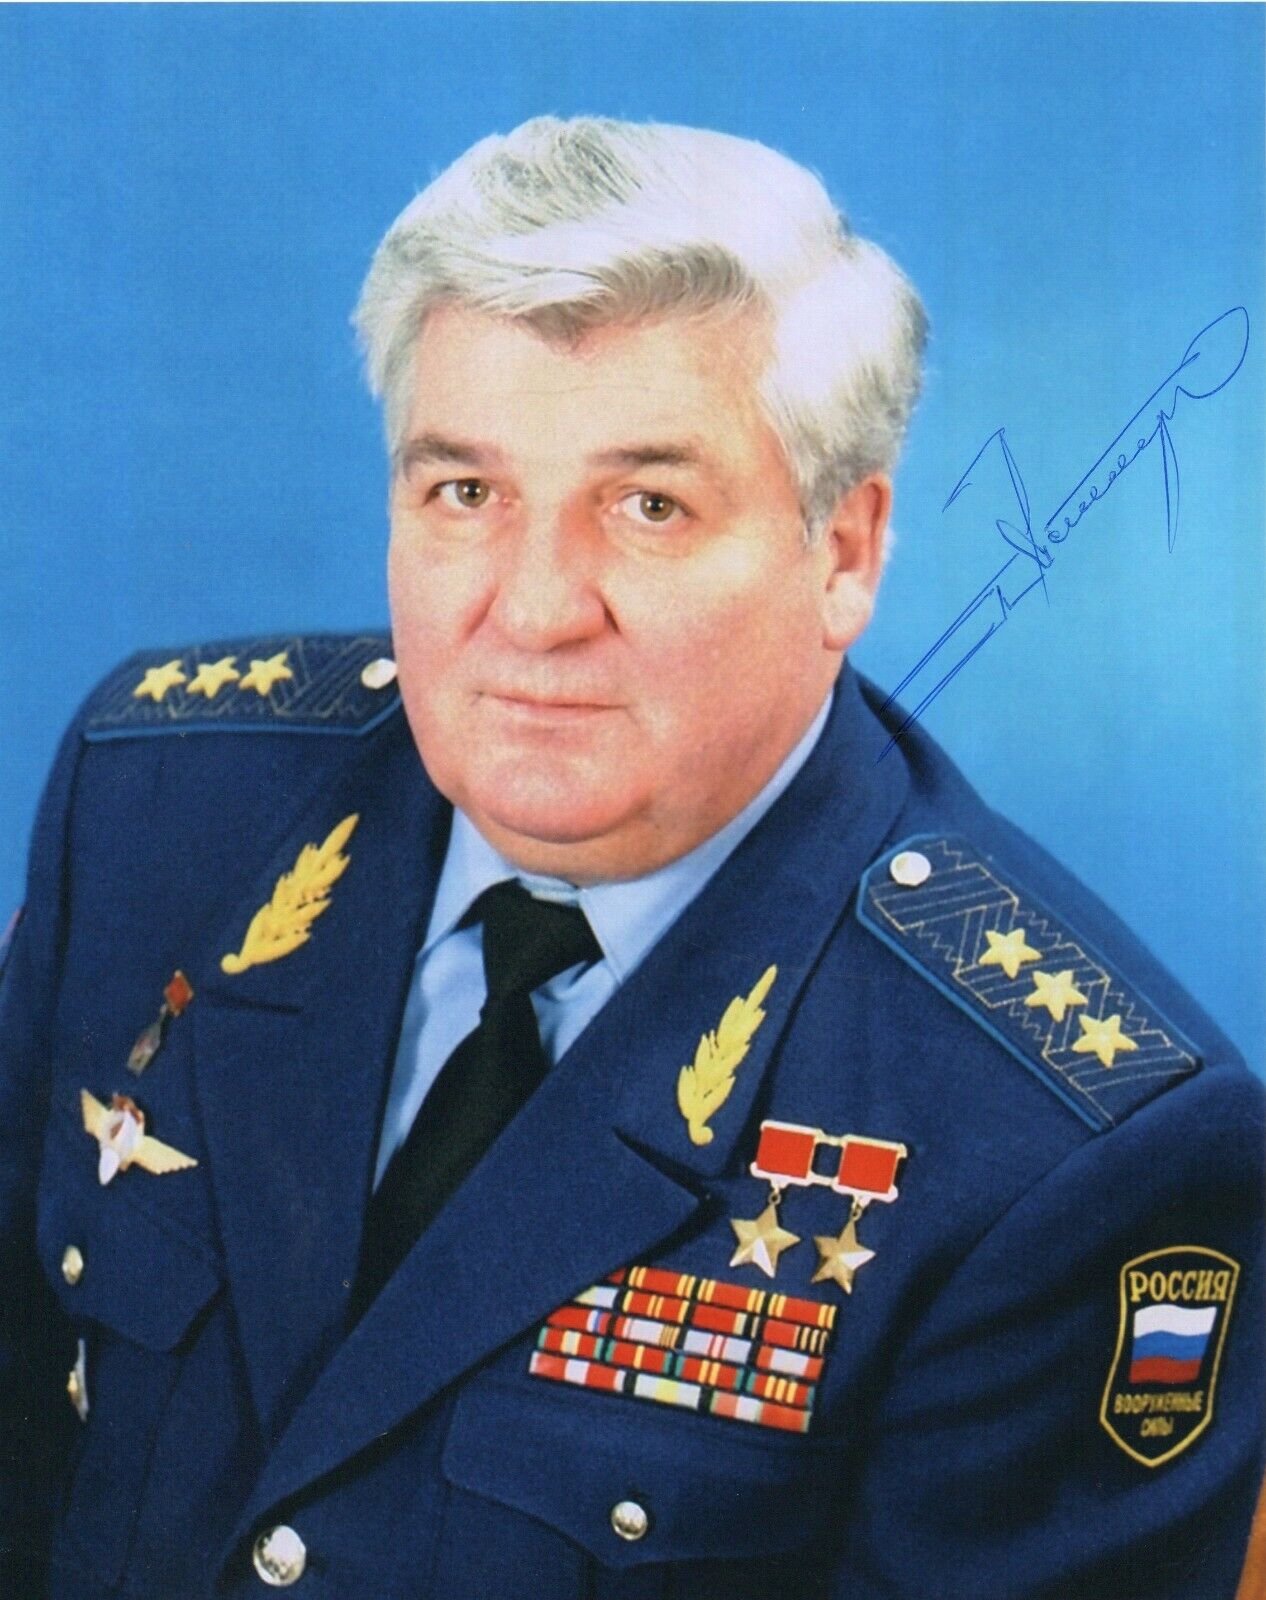 8x10 Original Autographed Photo of Soviet Cosmonaut Pyotr Klimuk